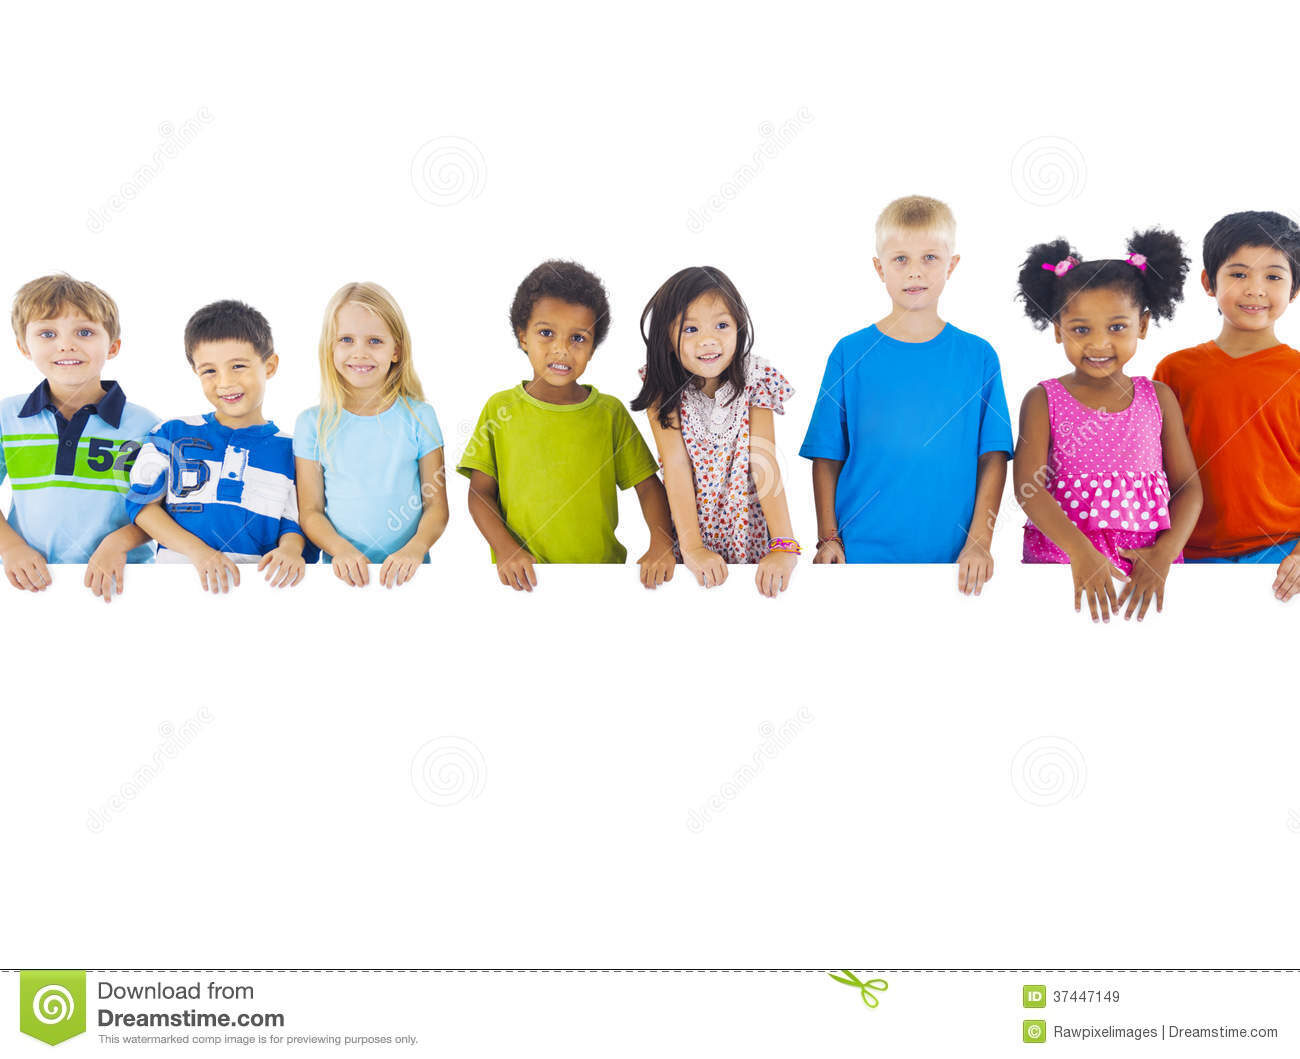 group-children-standing-behind-banner-37447149-7160895